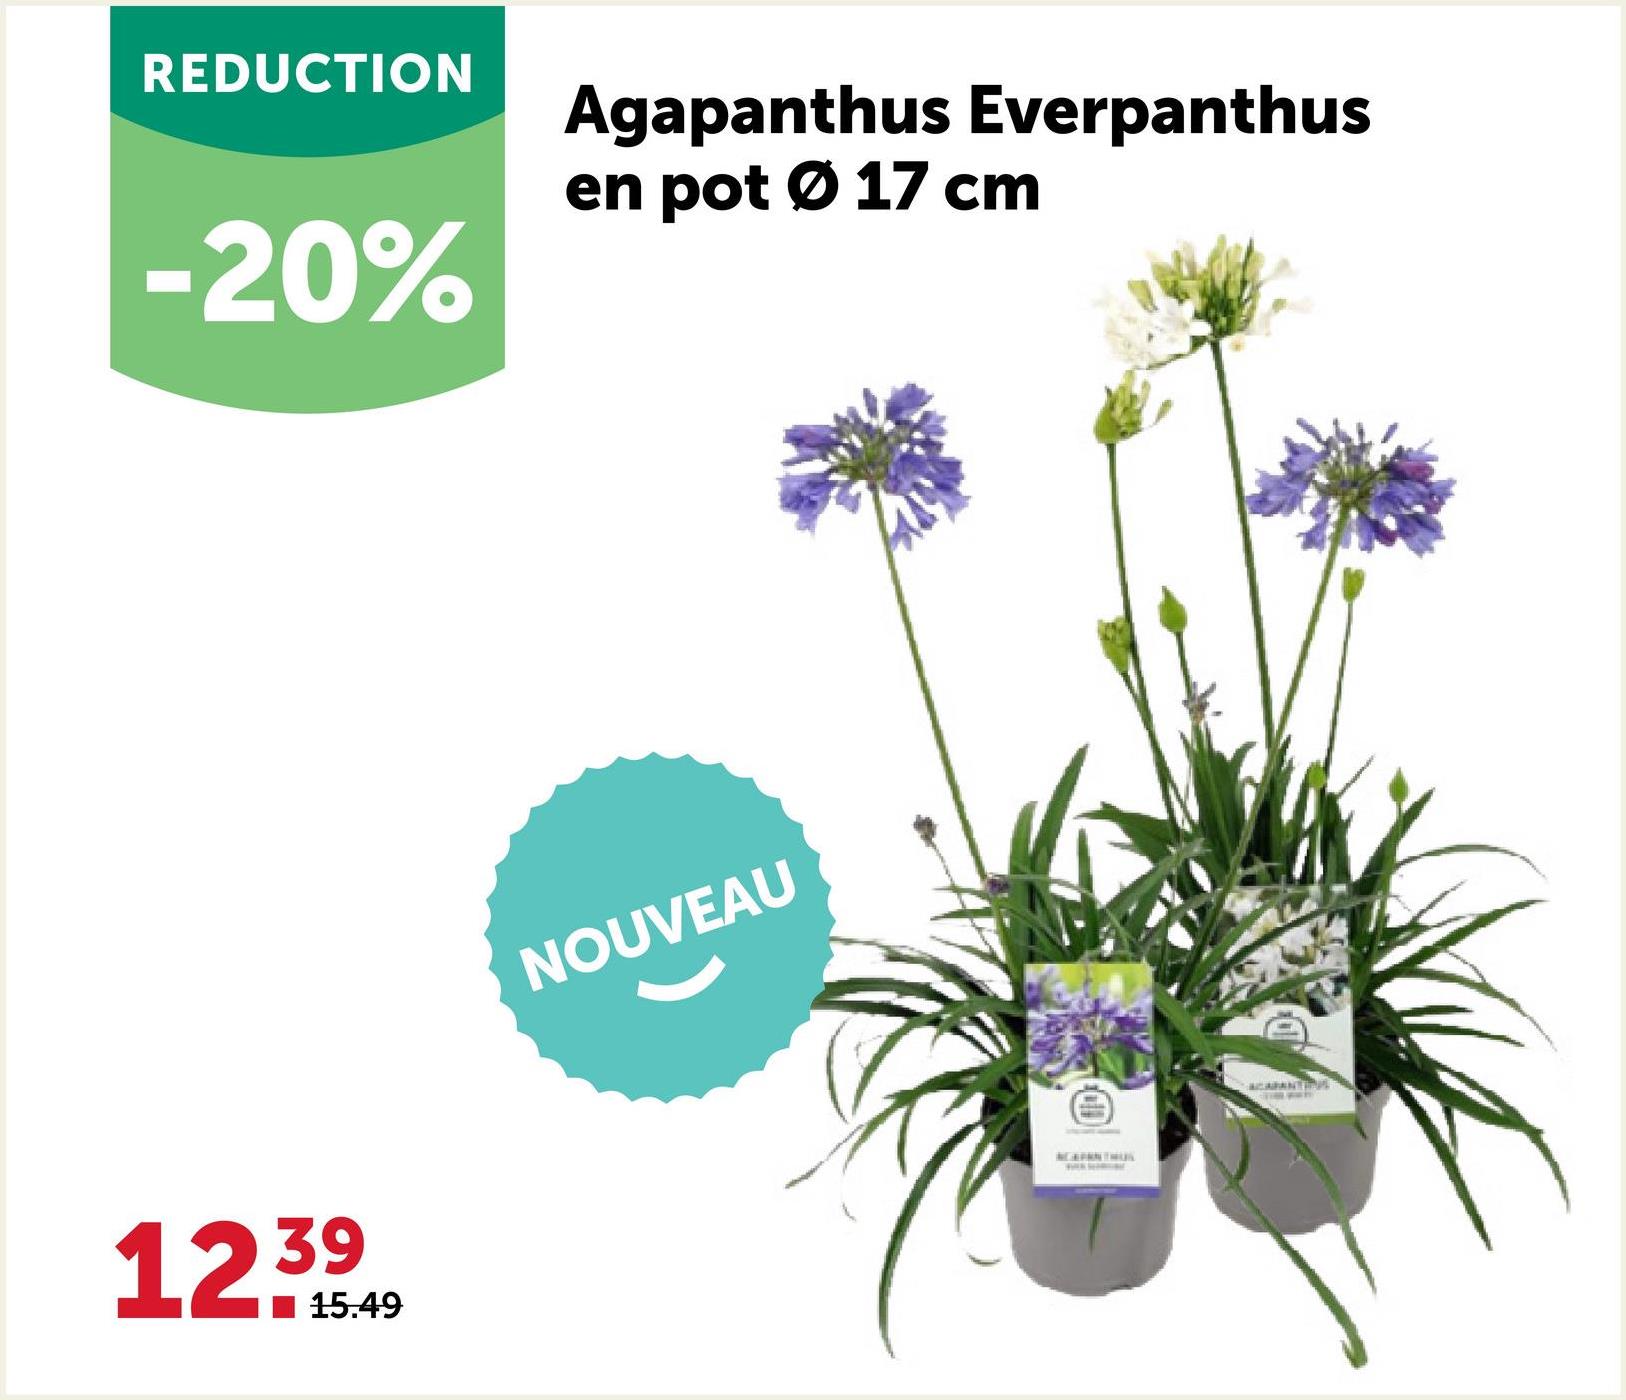 REDUCTION
-20%
Agapanthus Everpanthus
en pot 0 17 cm
12.39
15.49
NOUVEAU
AGAPANTHUS
ACARANTIS